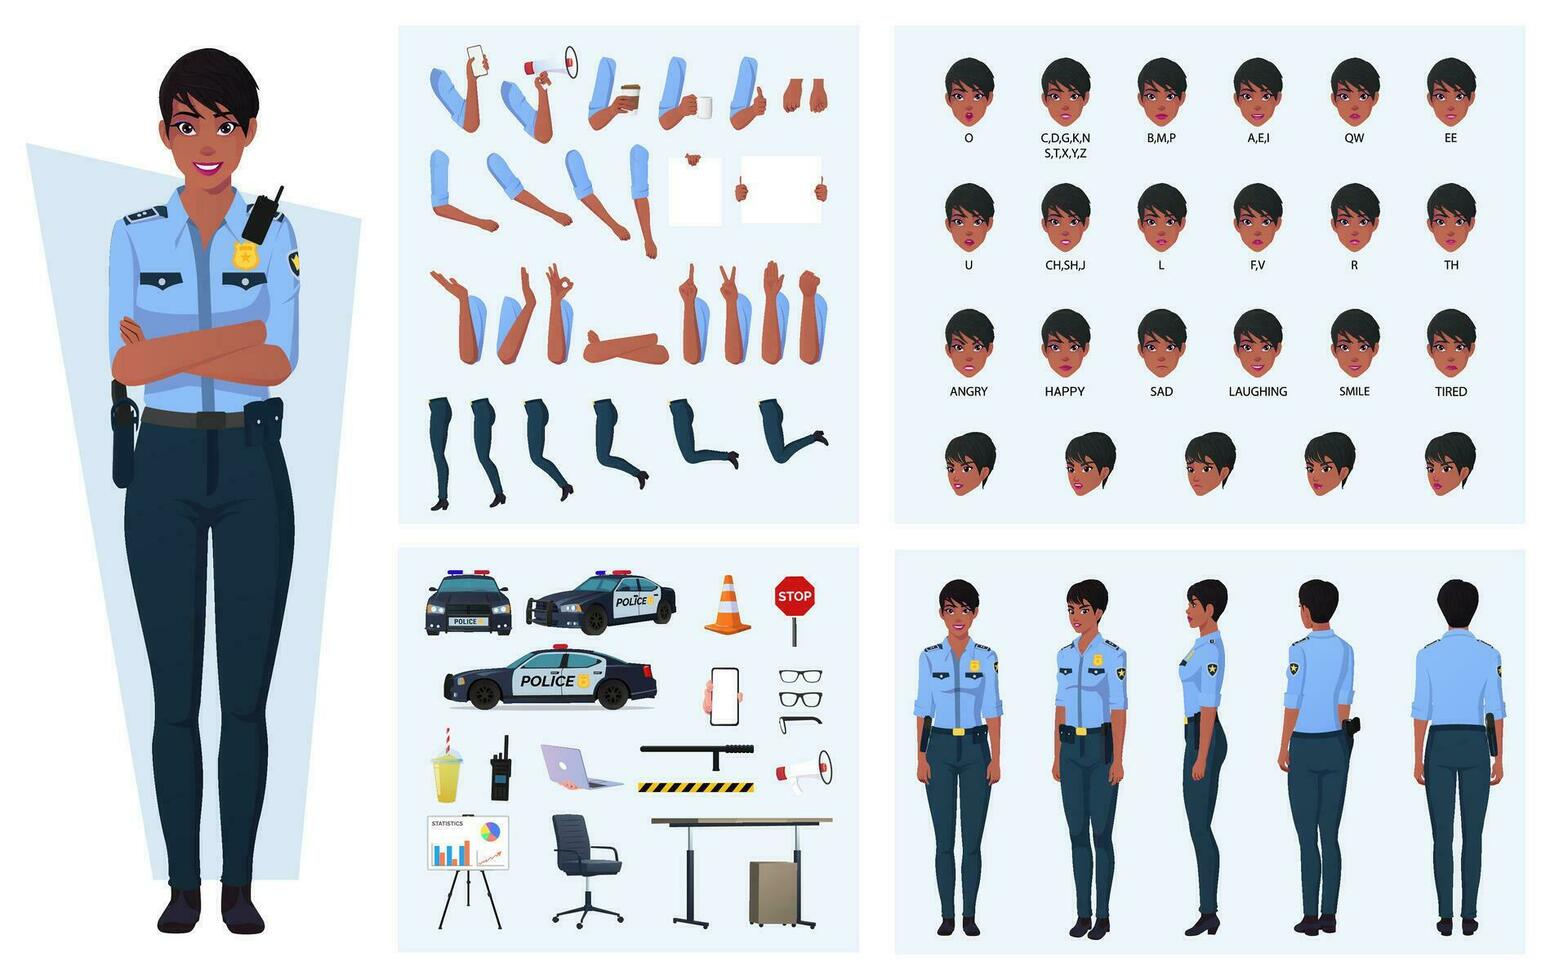 police uniforme coloration page papier poupée avec femelle chiffre,  vêtements, coiffures et accessoires. vecteur illustration 22311706 Art  vectoriel chez Vecteezy